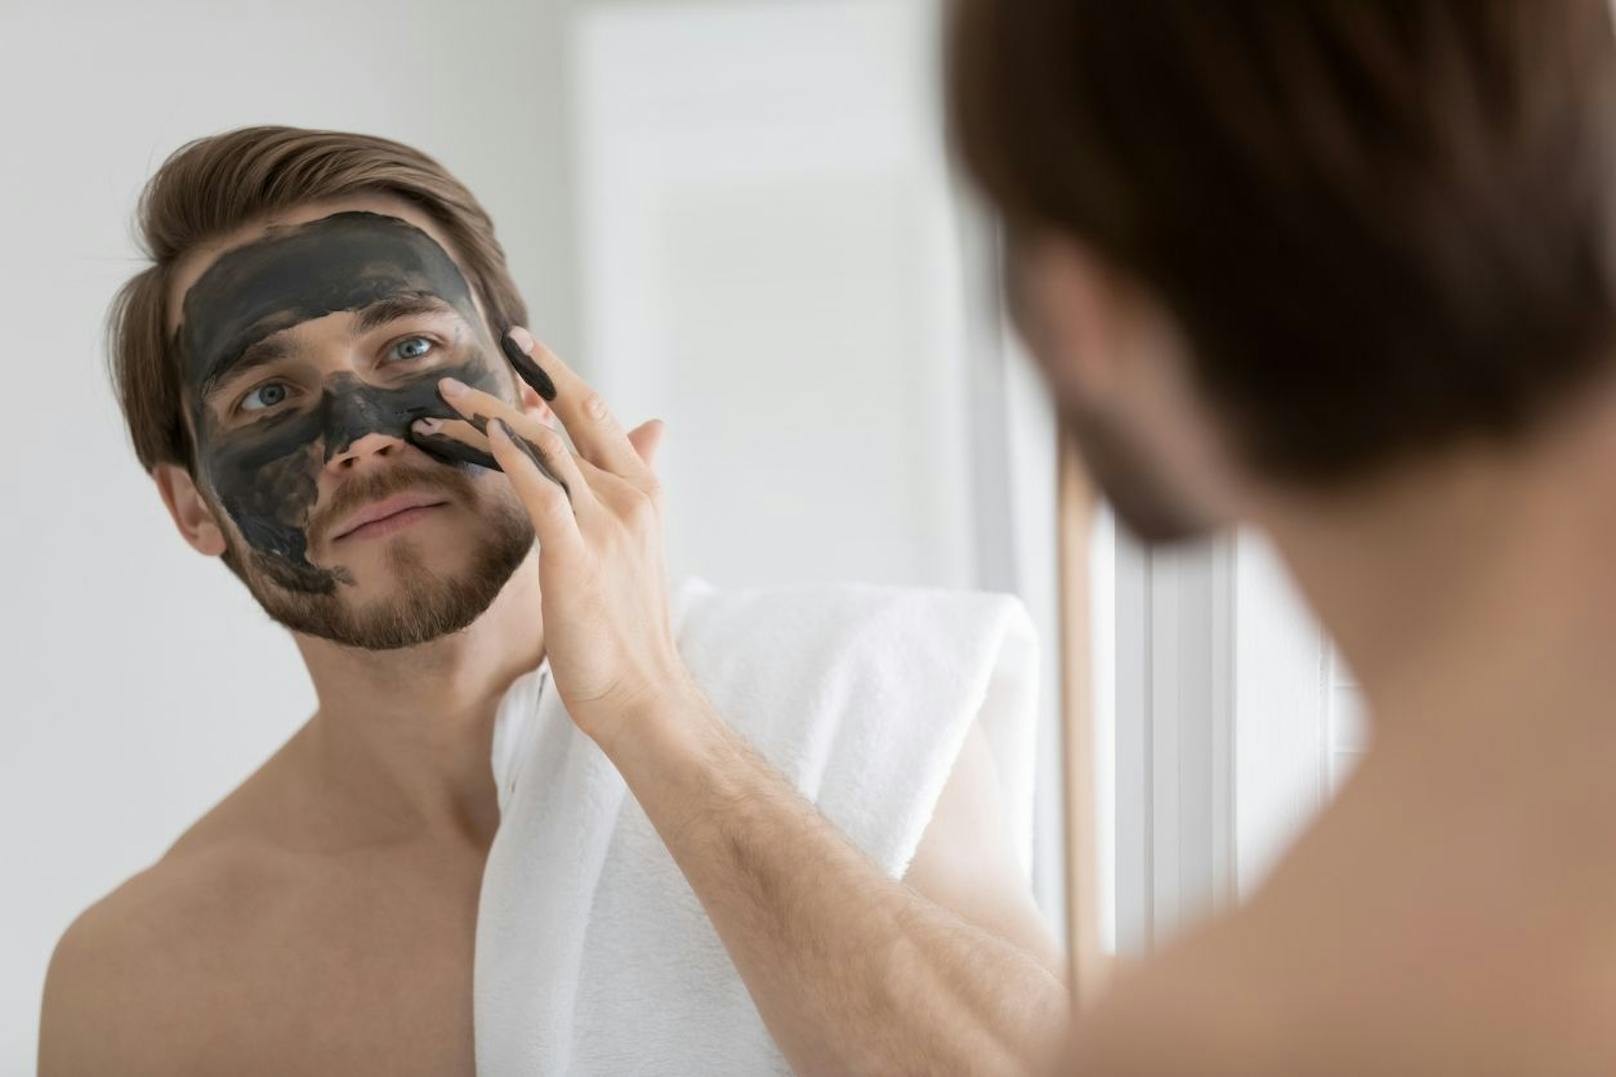 Wenn dein Gesicht viele Unreinheiten hat, dann kann ein tiefdringendes Peeling helfen deine Mitesser & Co zu entfernen. 